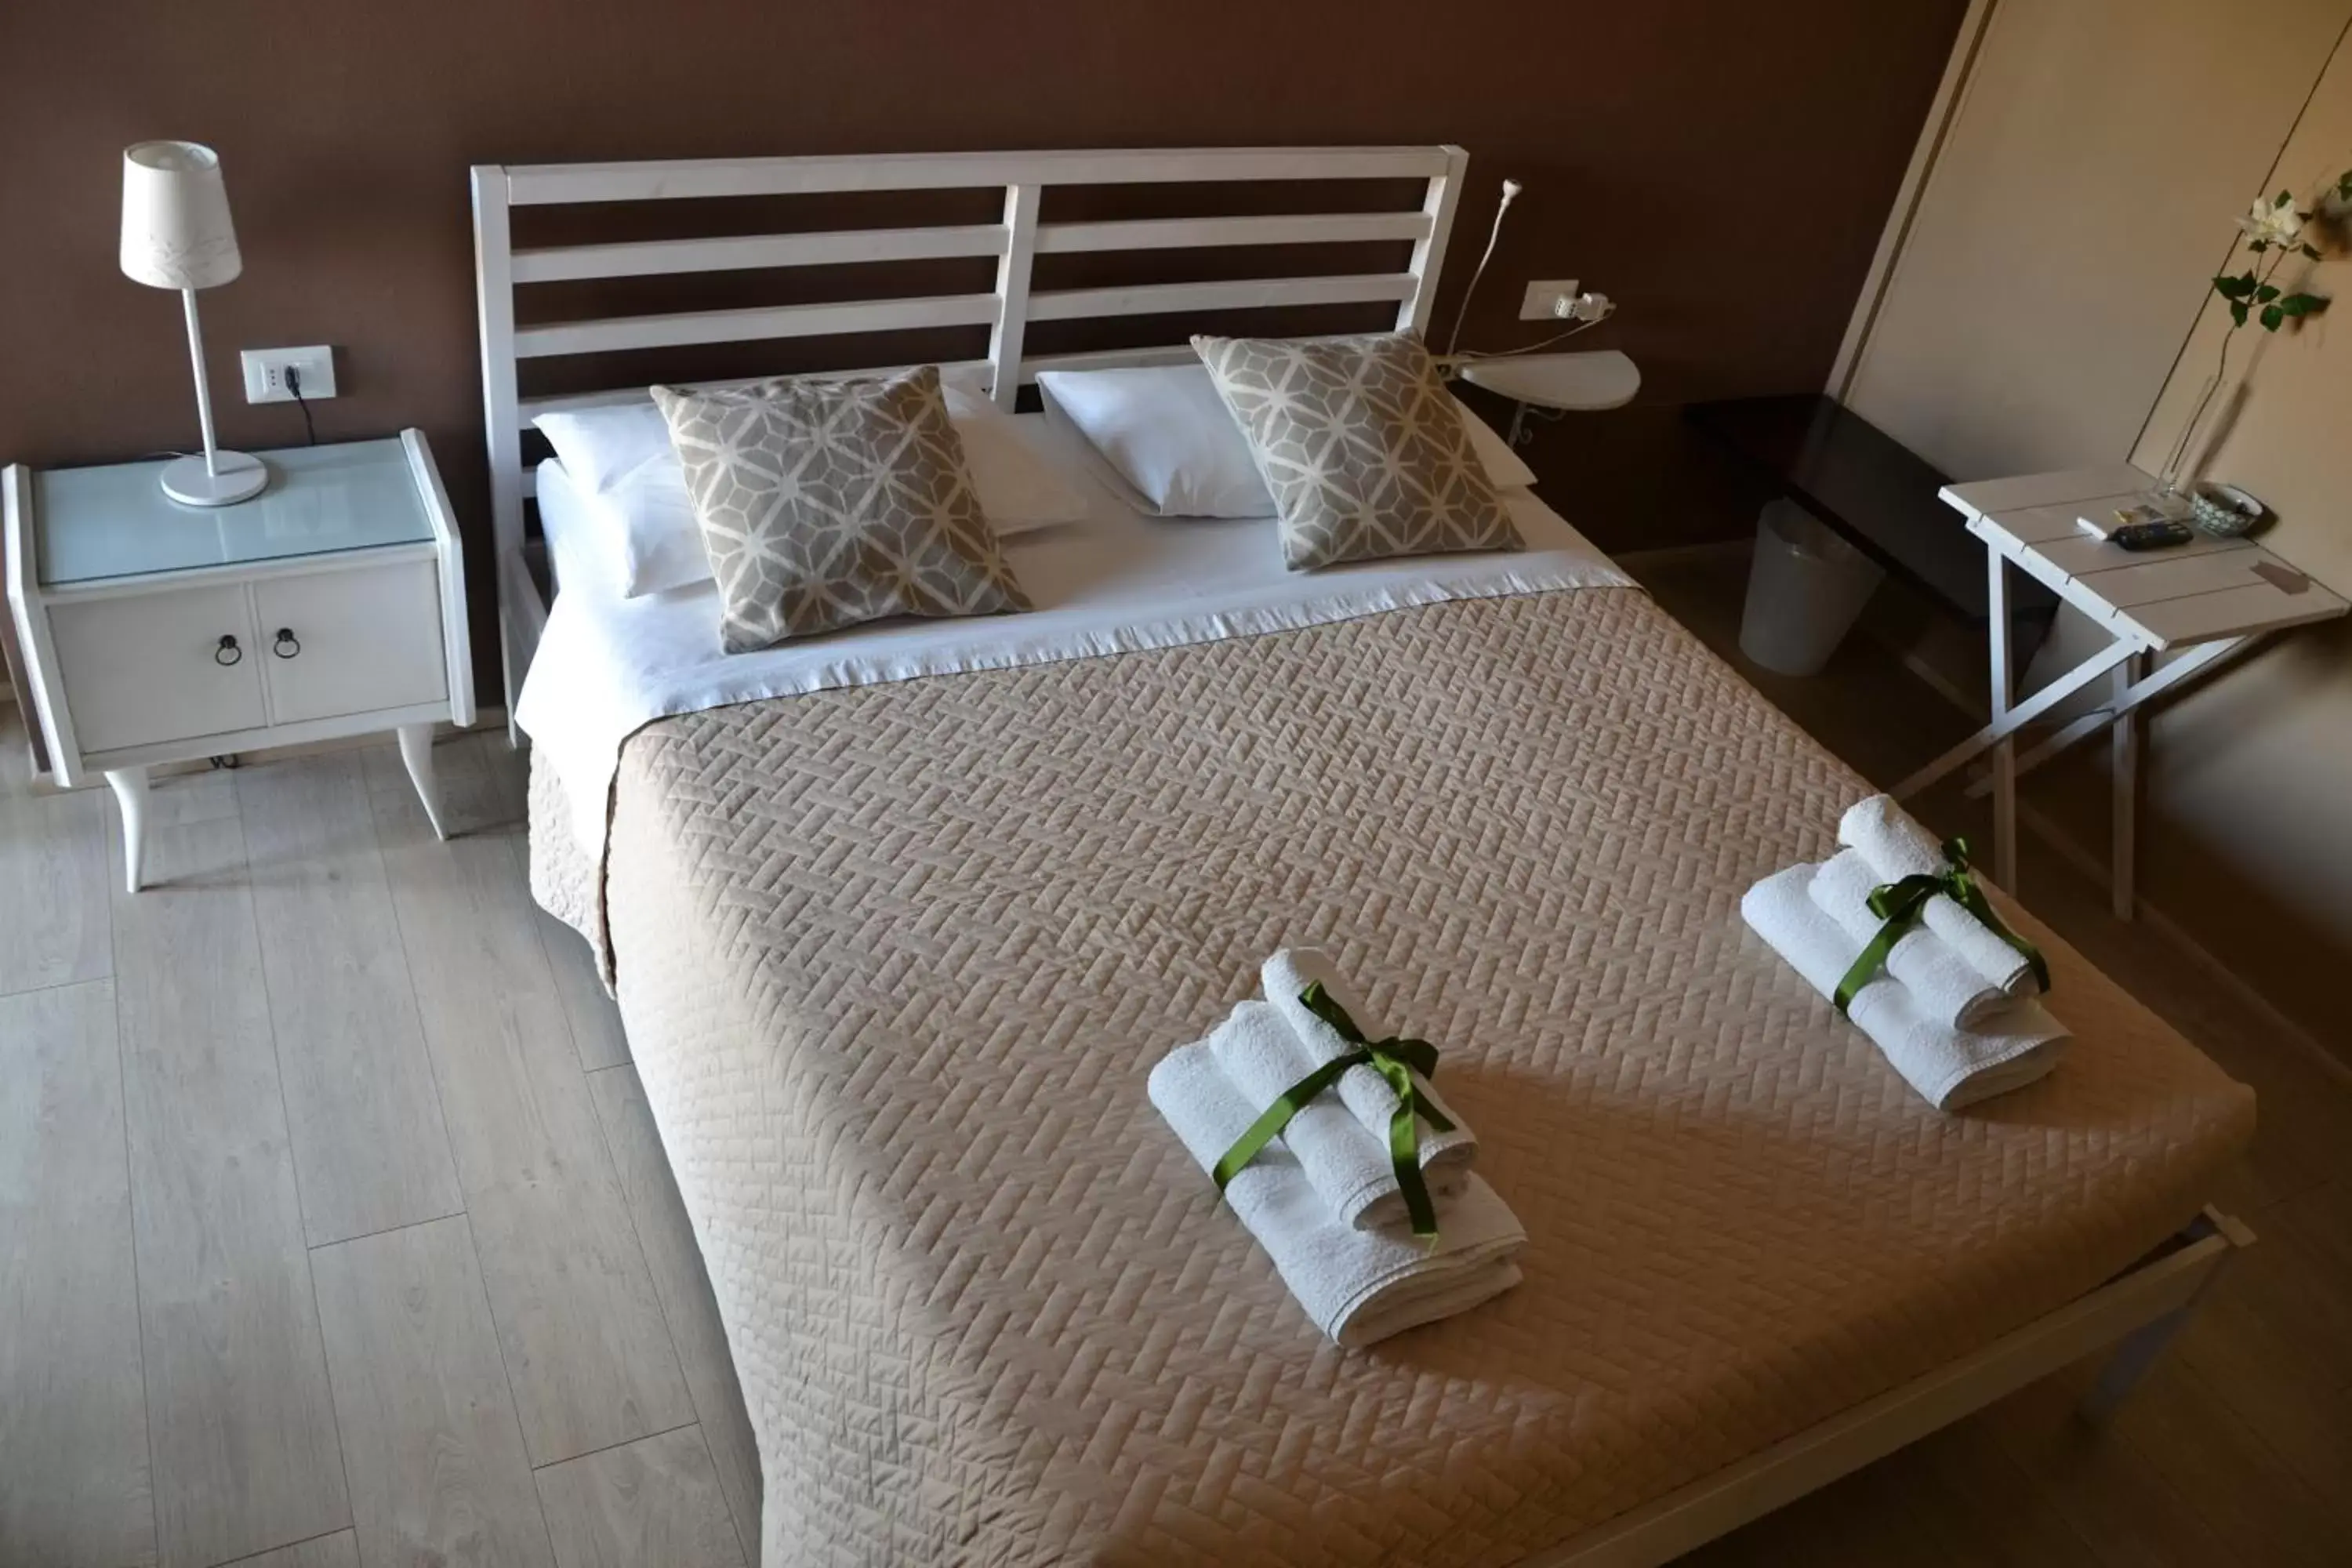 Bedroom, Room Photo in La Combriccola